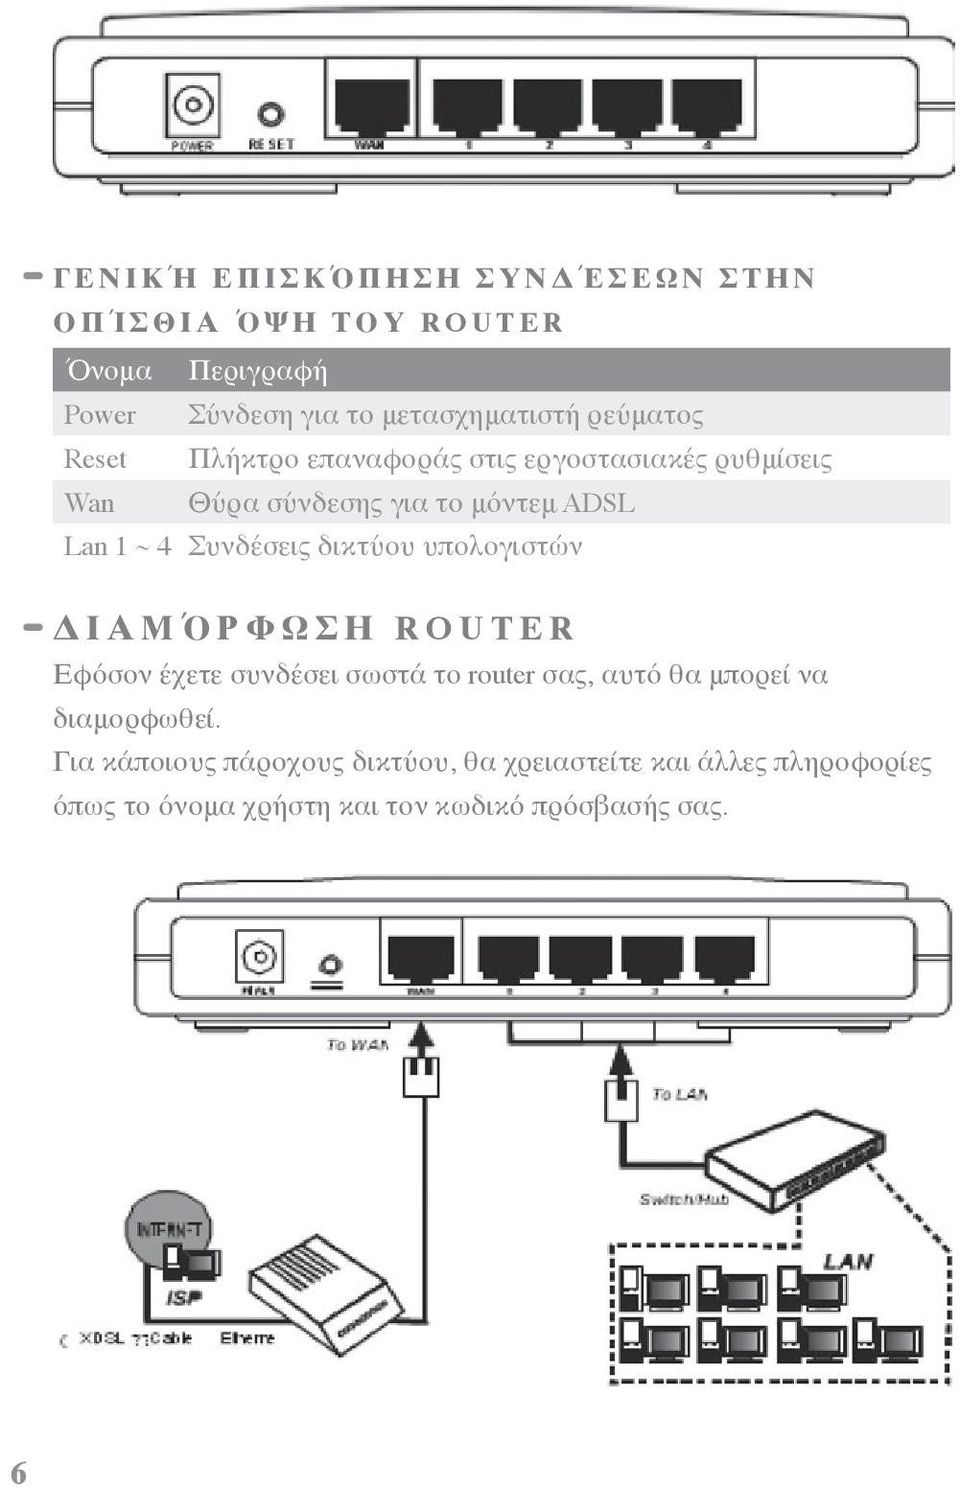 ~ 4 Συνδέσεις δικτύου υπολογιστών Δ Ι Α Μ Ό Ρ Φ Ω Σ Η R O U T E R Εφόσον έχετε συνδέσει σωστά το router σας, αυτό θα μπορεί να